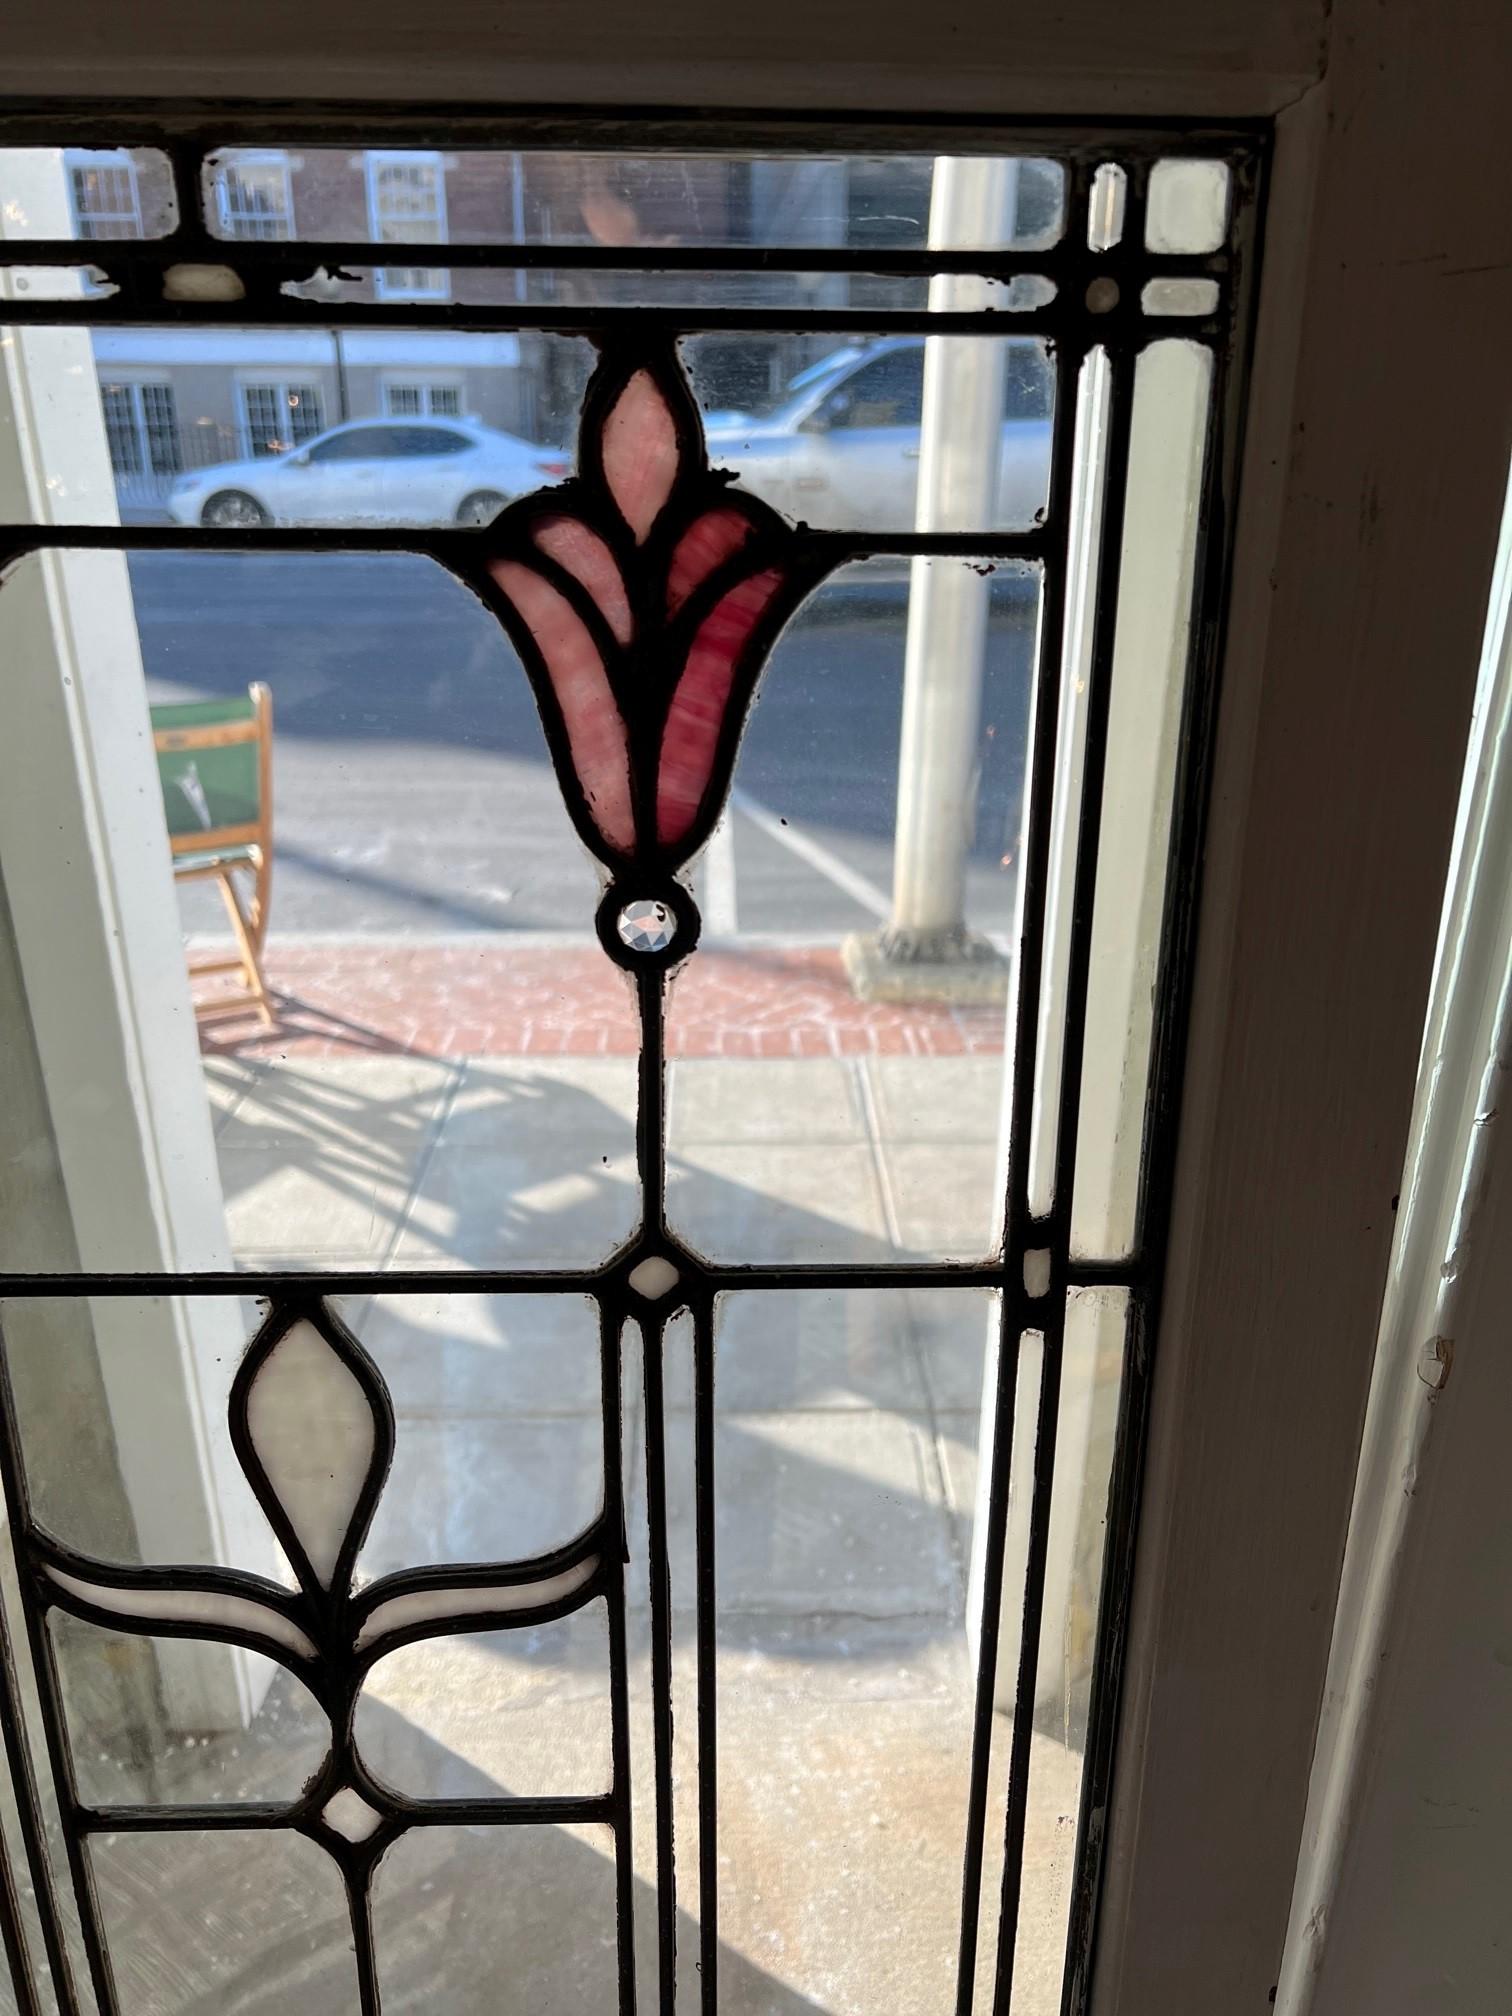 art deco stained glass door